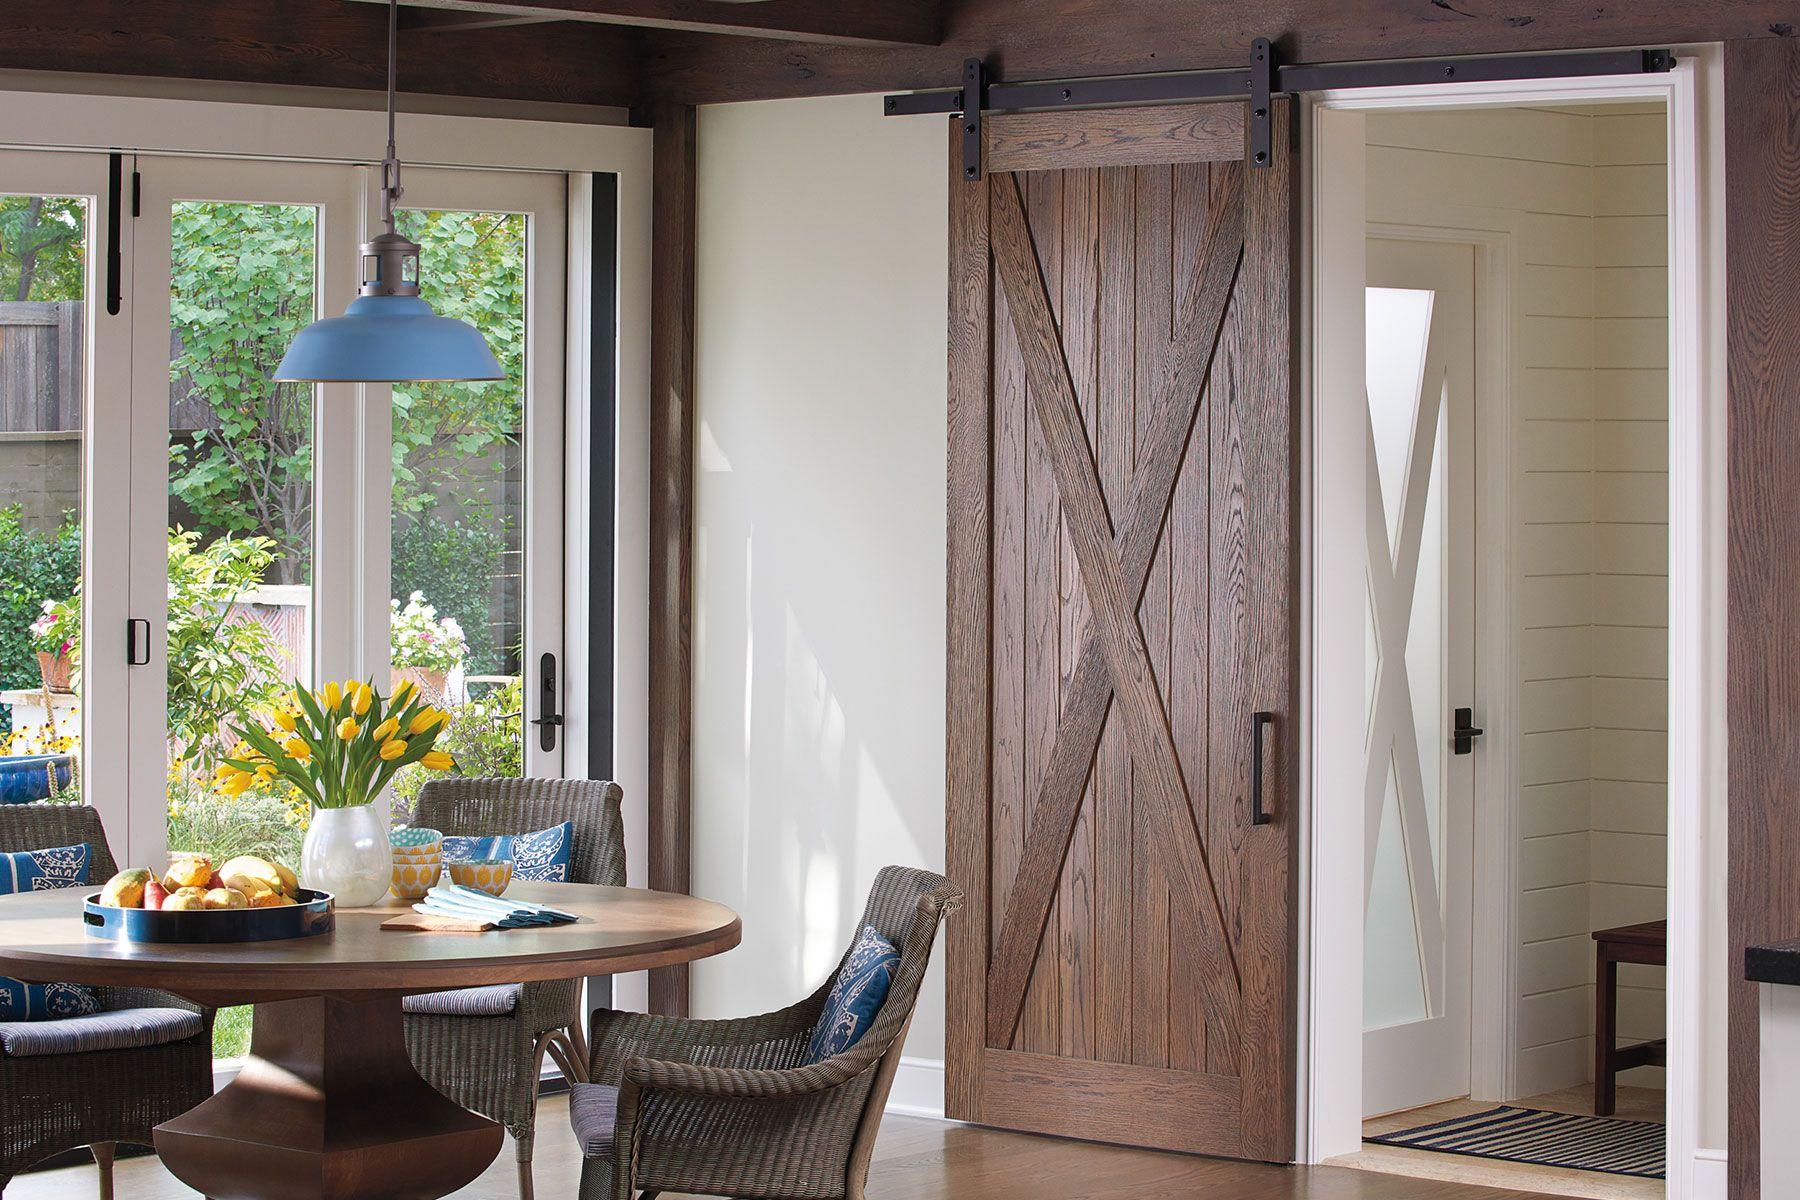 dining room with interior wooden barn door and glass panel door